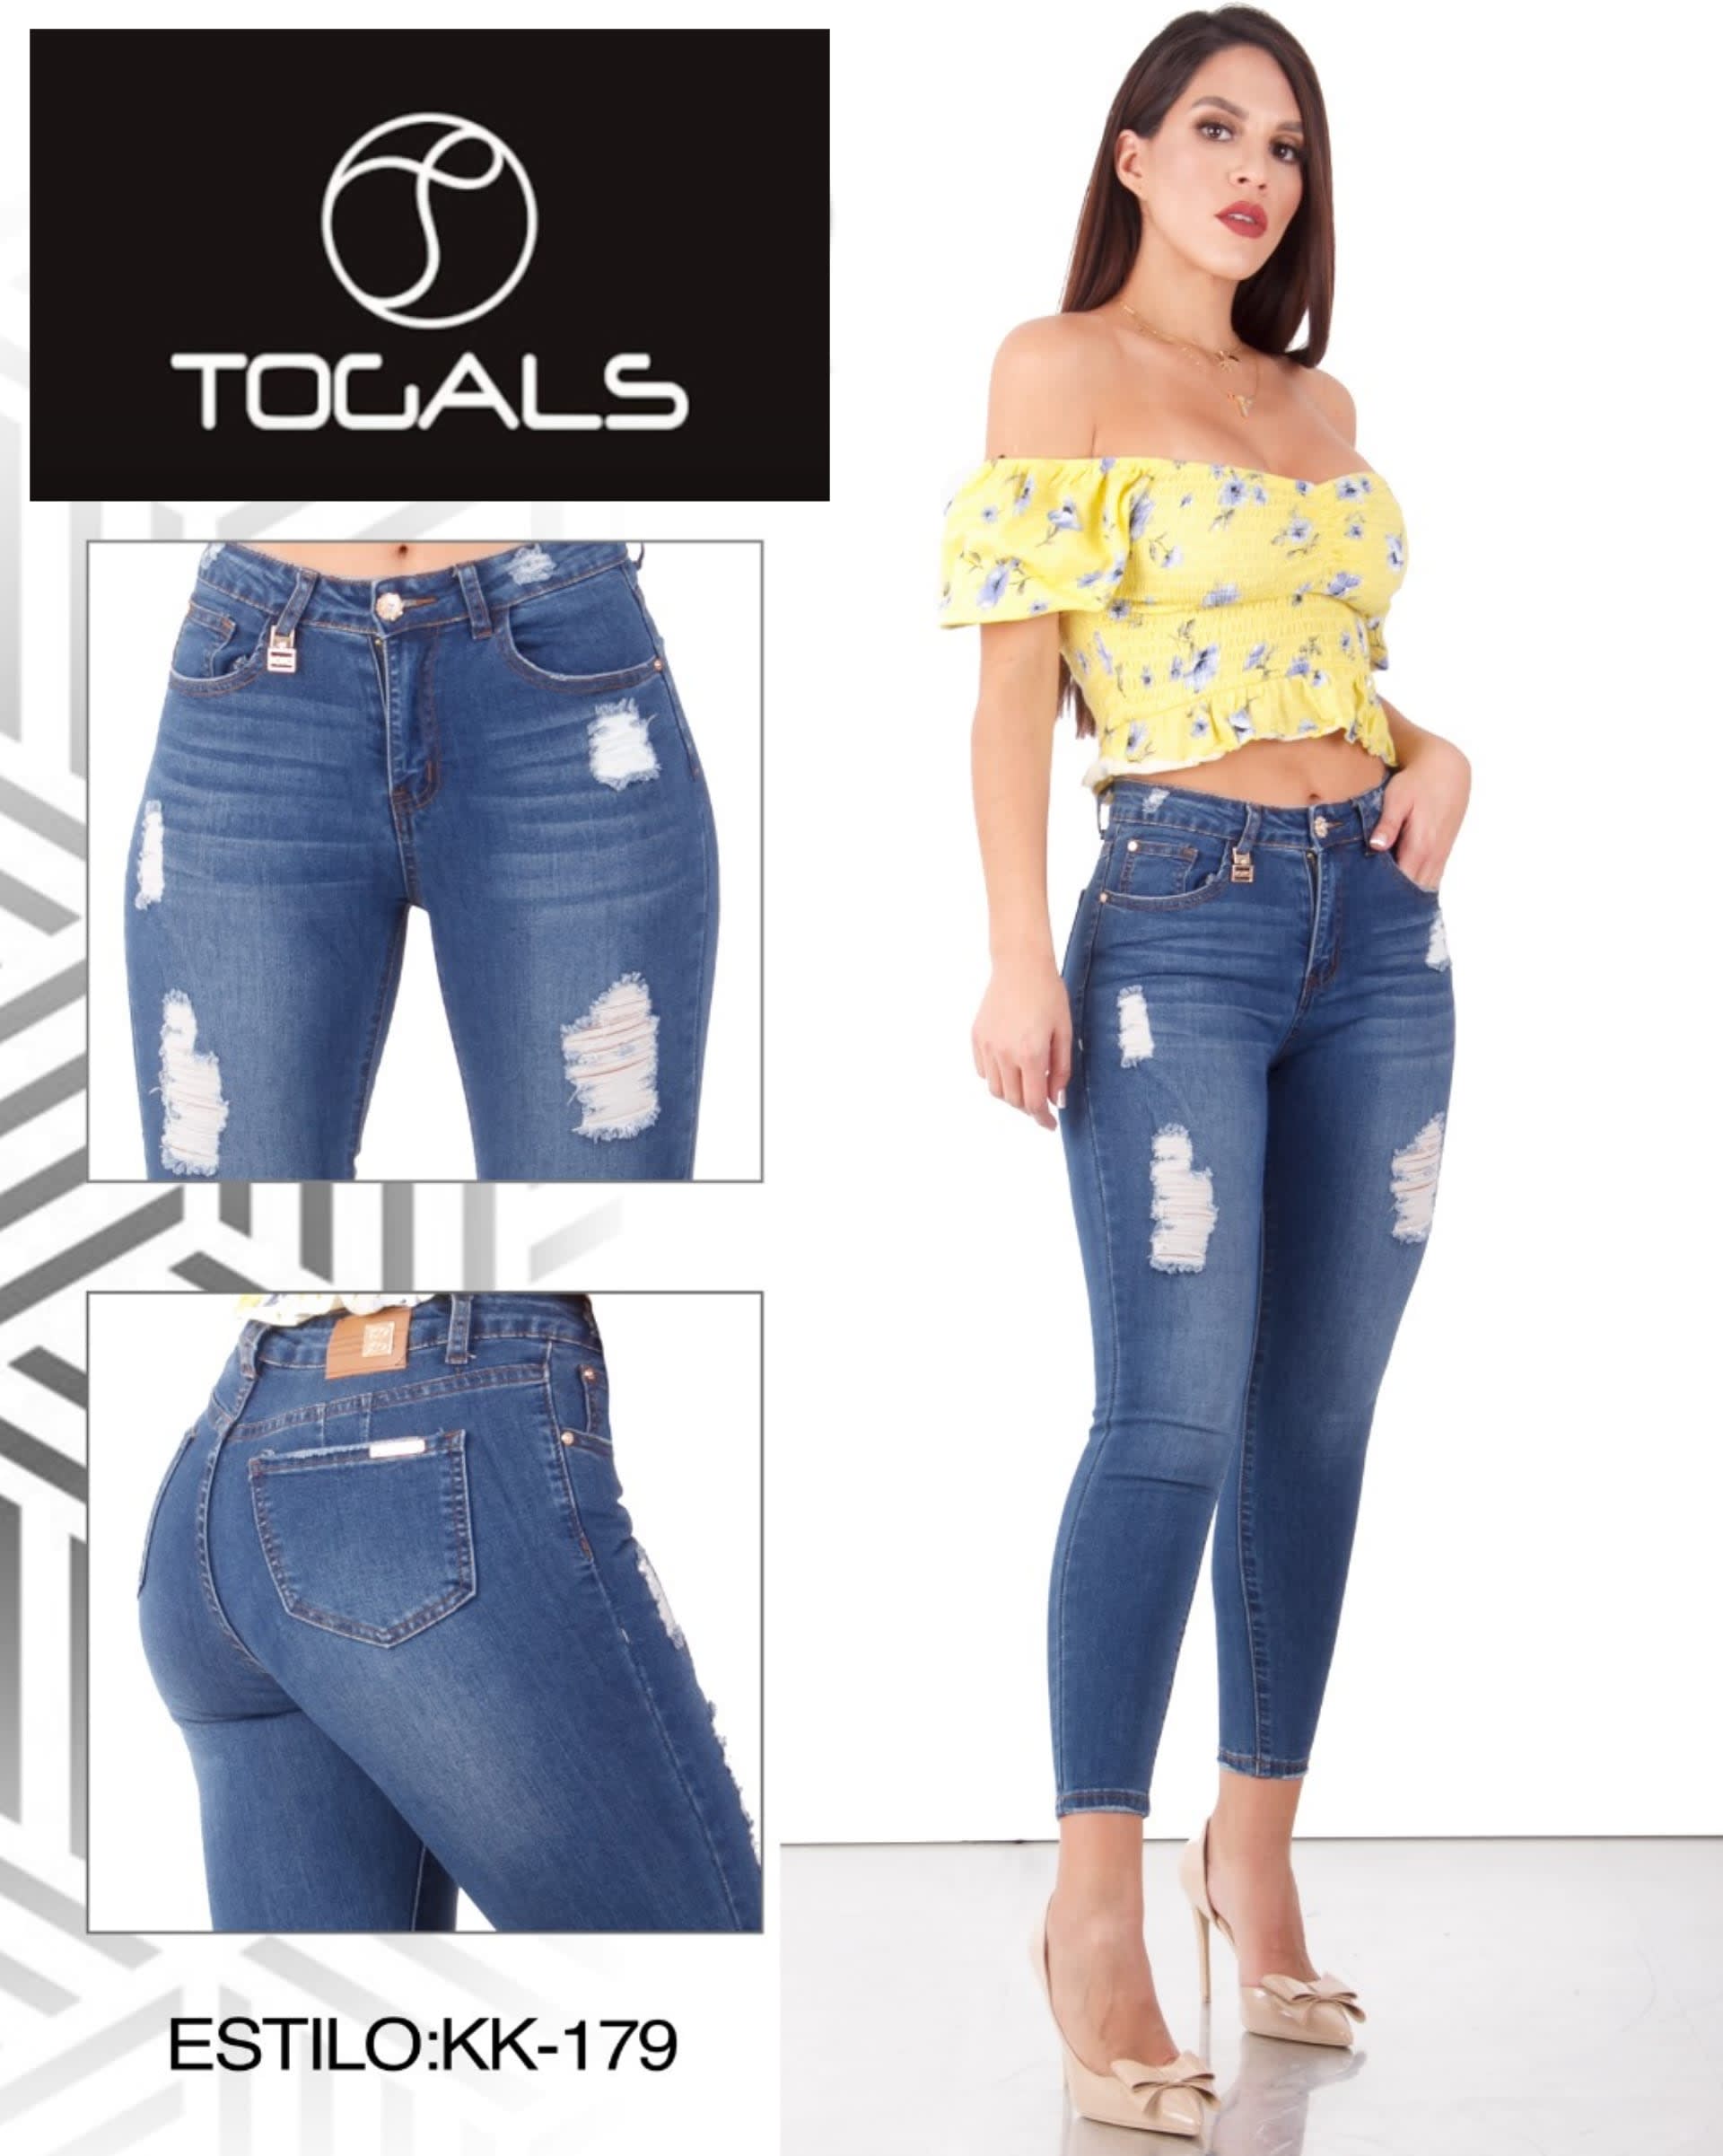 Pantalones de dama - Ropa para todos los estilos - Togals - Tienda